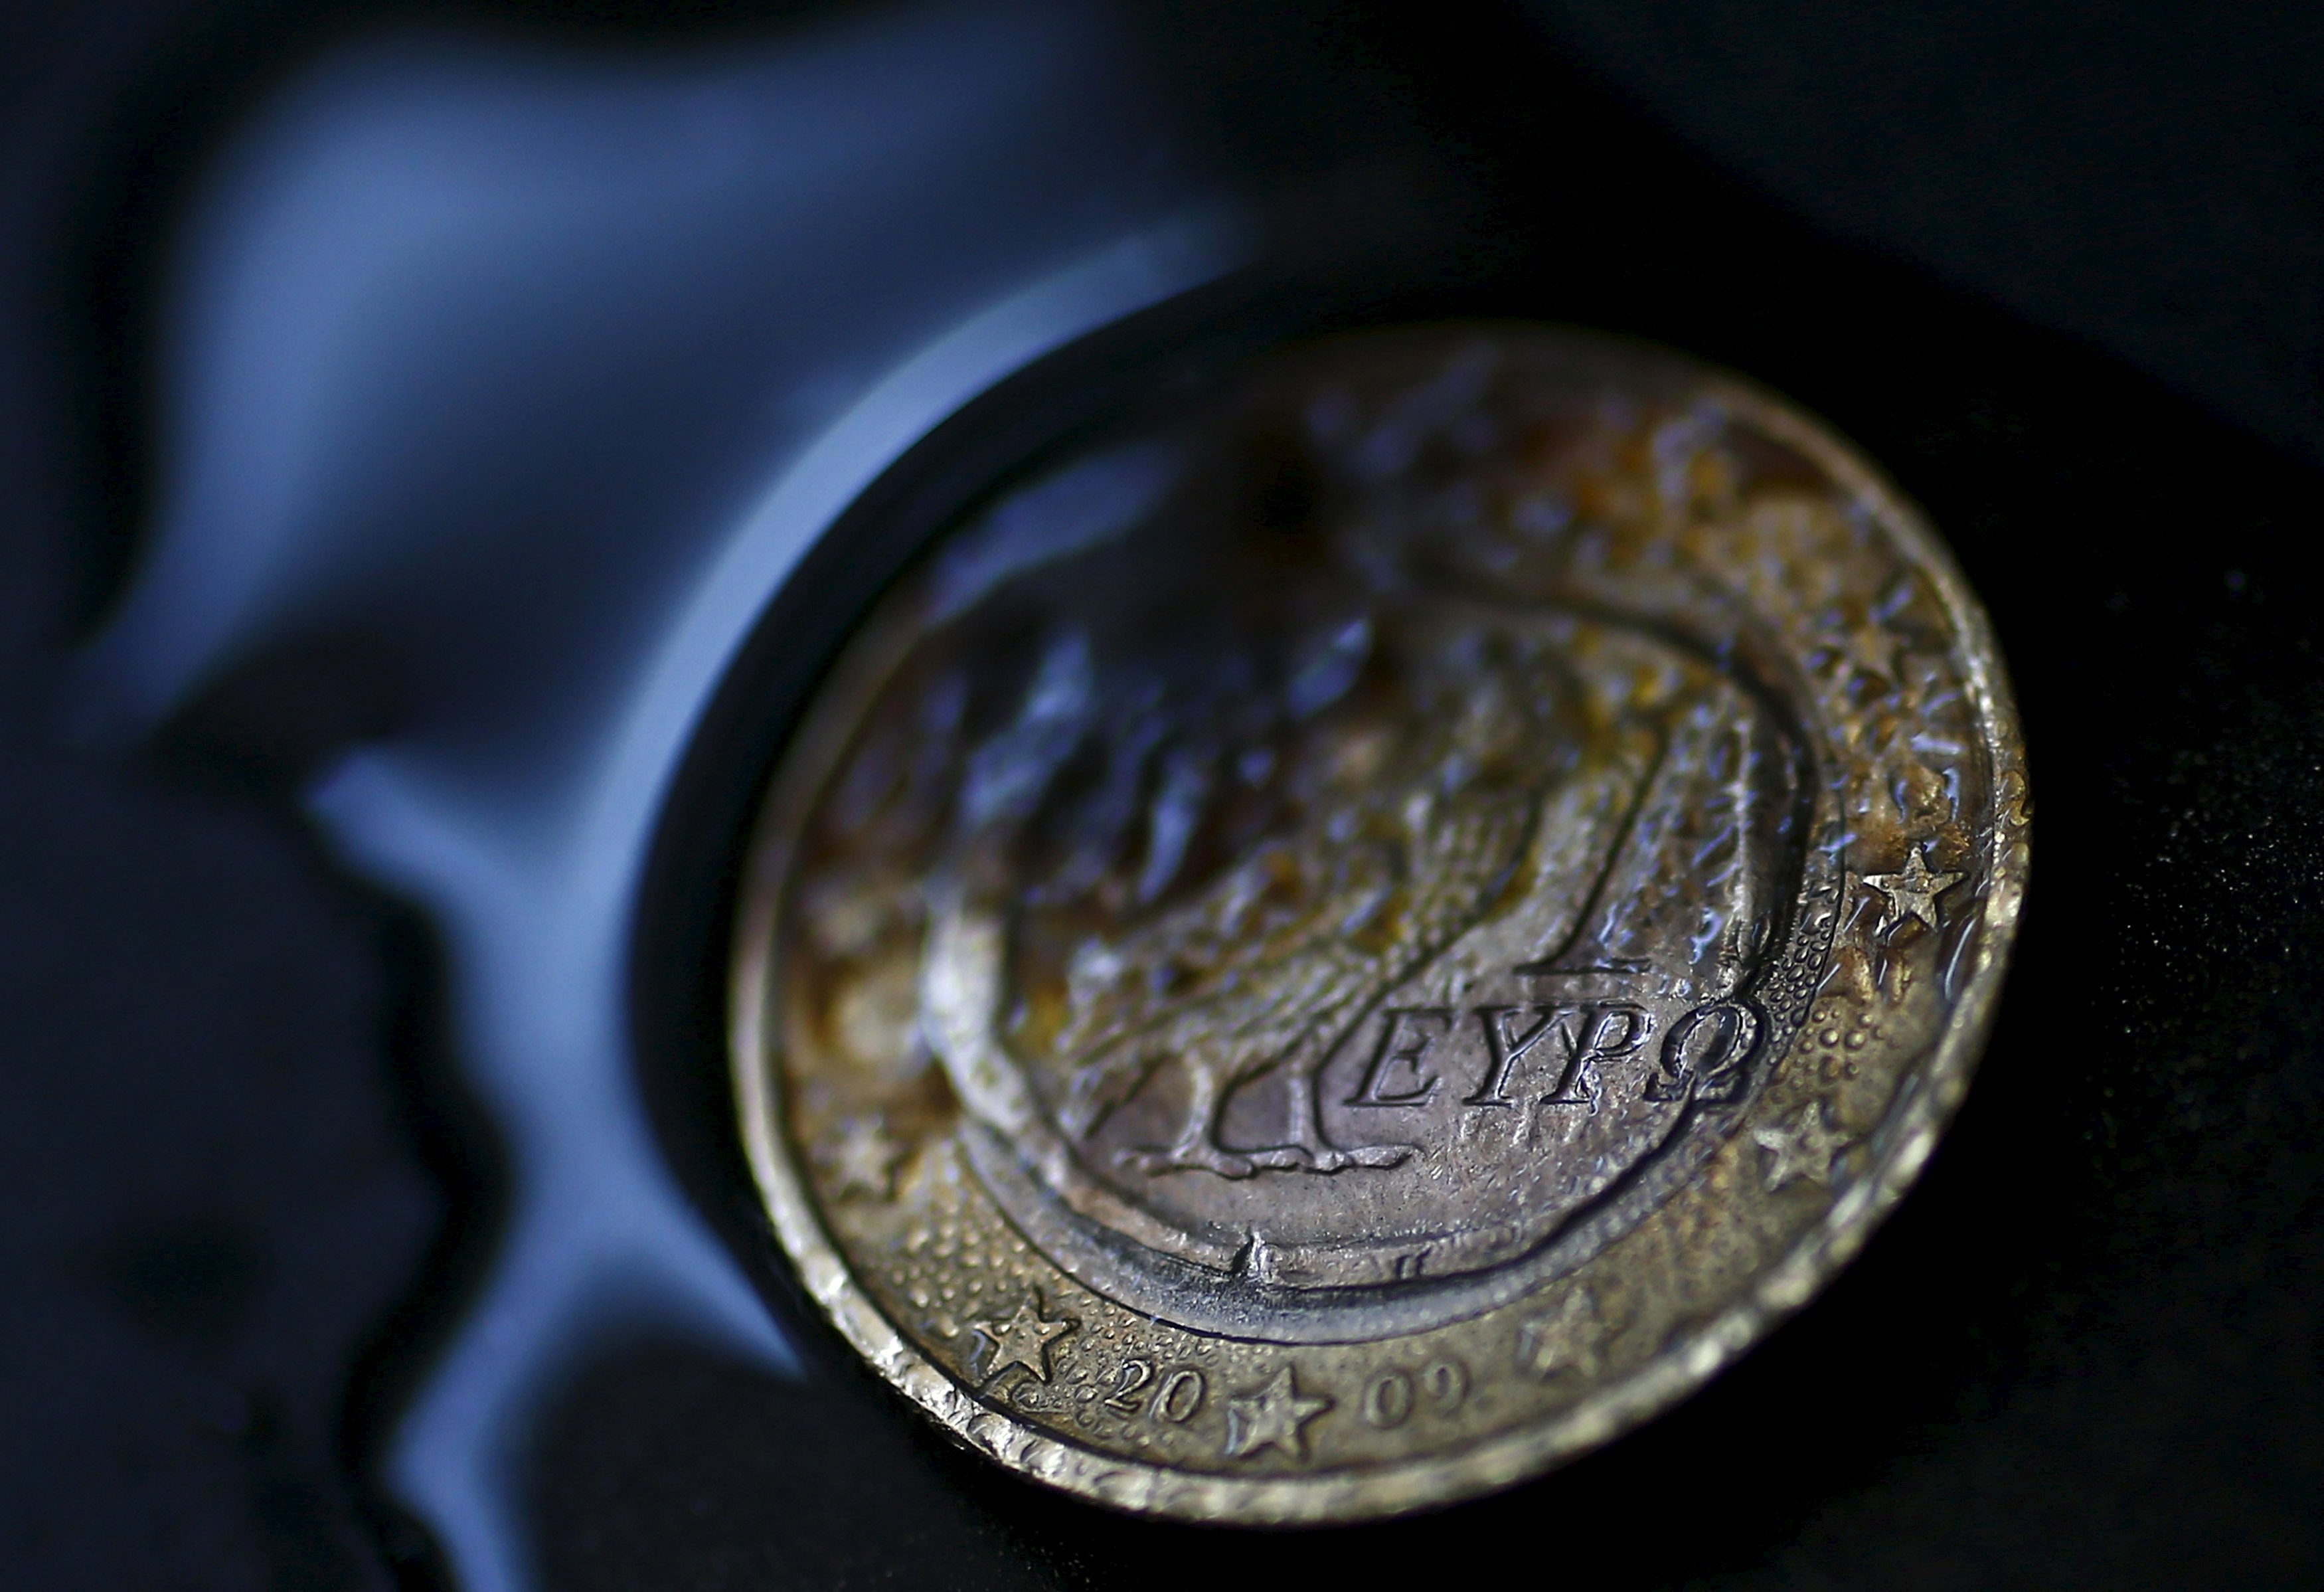 Αρνητικός ρόλος της Ελλάδας σε σενάρια διάλυσης ή διάσωσης του ευρώ